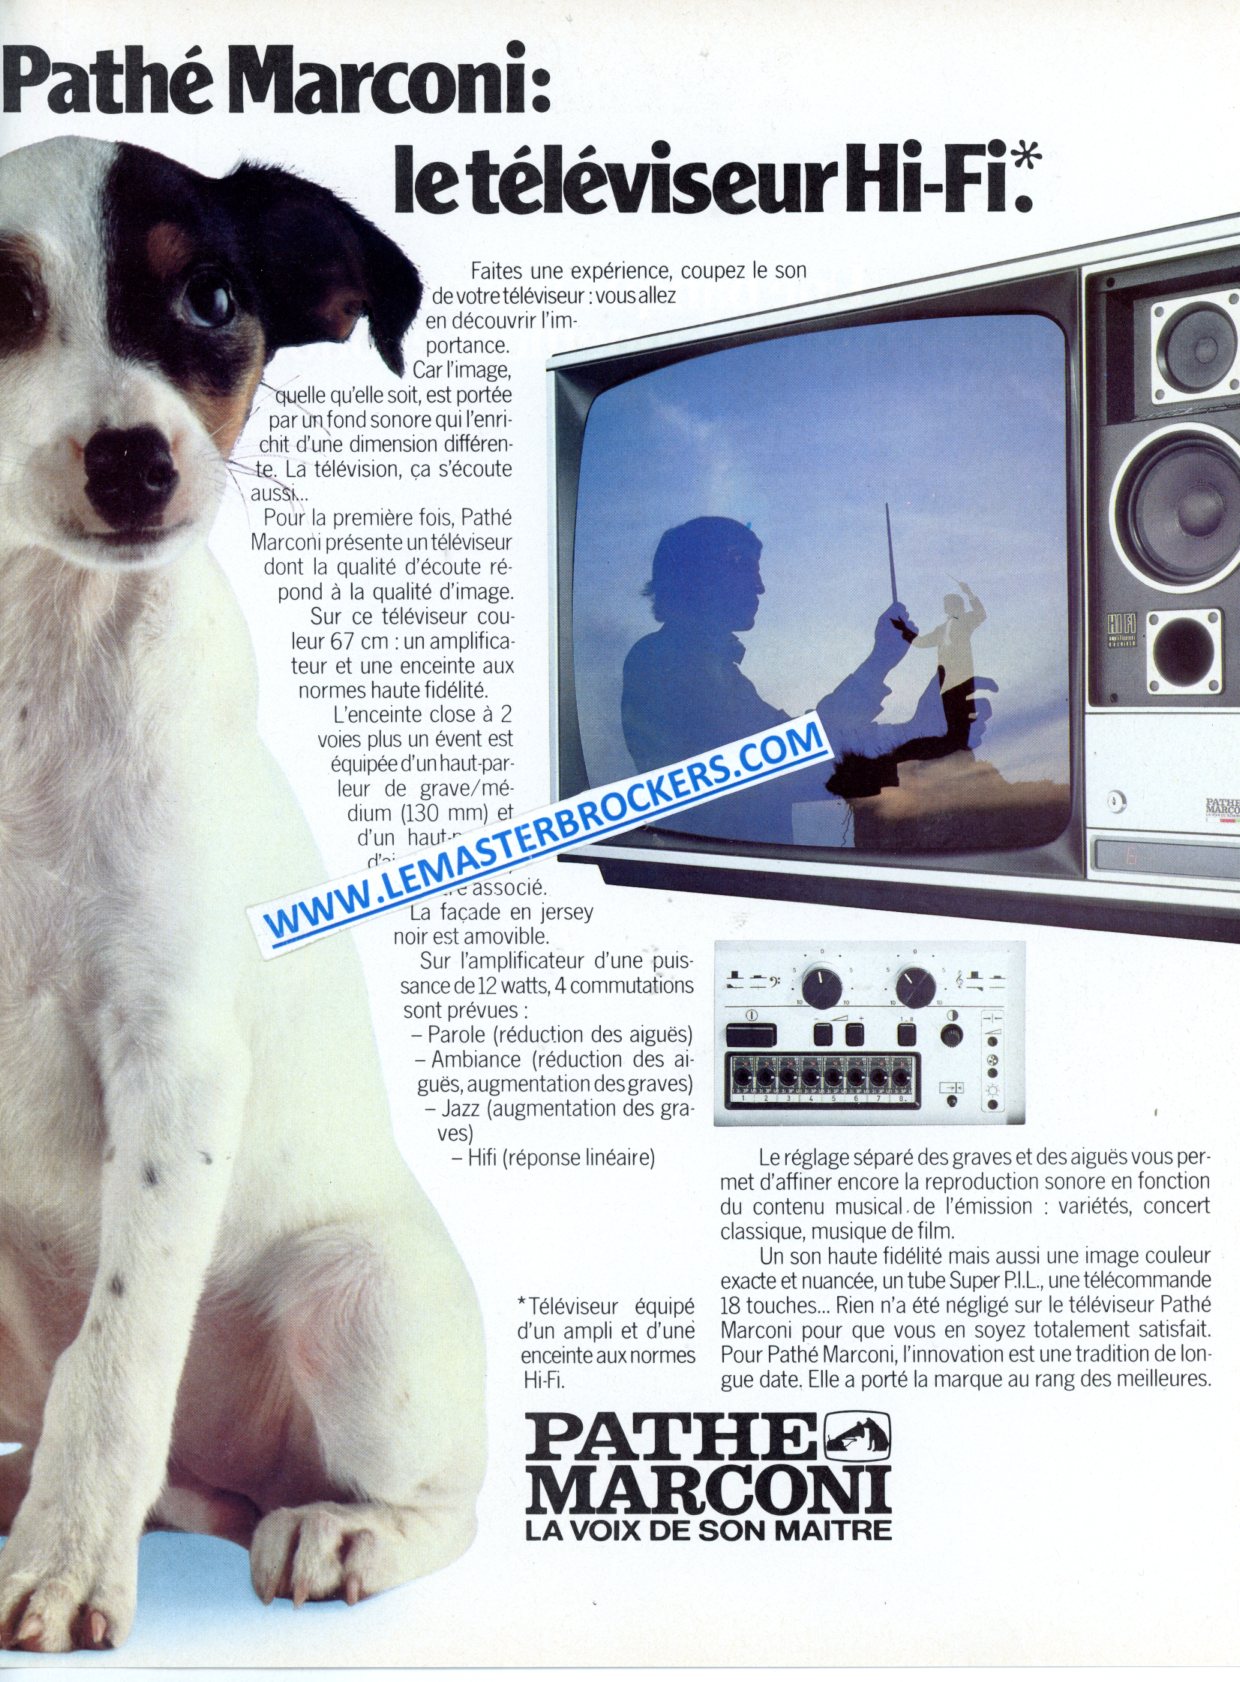 PUBLICITÉ PATHÉ MARCONI TÉLÉVISEUR HI-FI - ADVERTISING 1978